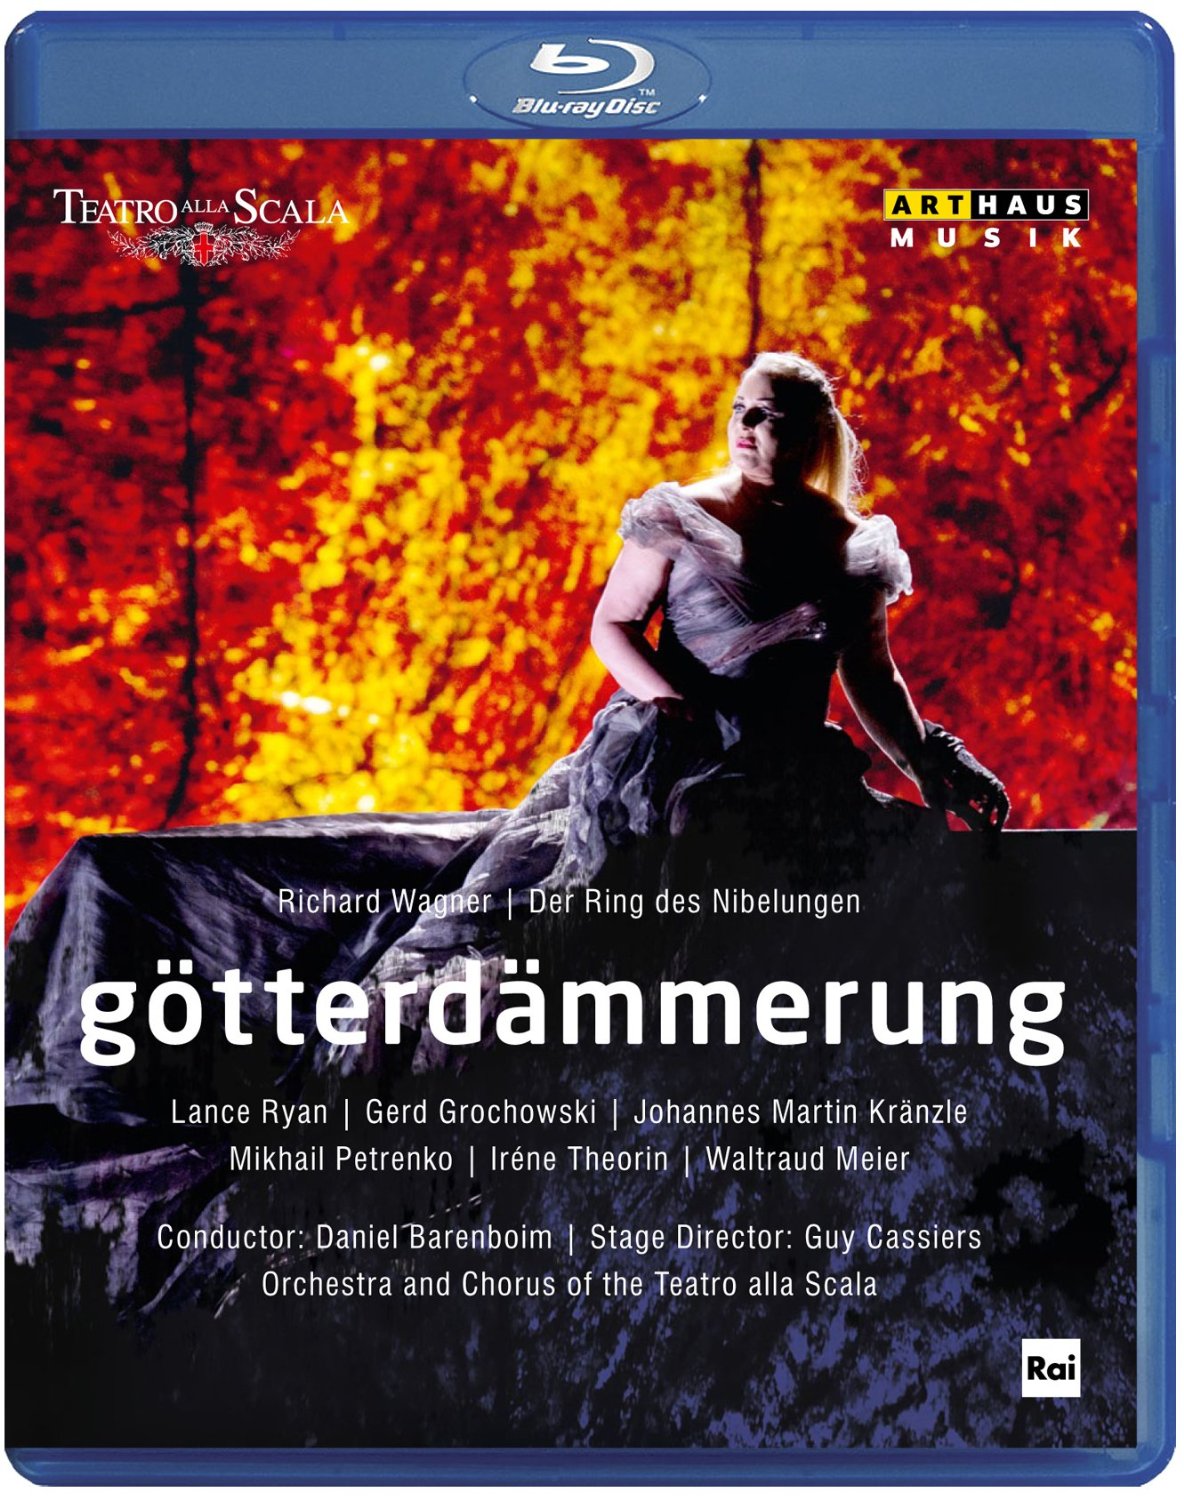 Music Blu-Ray Richard Wagner - Gotterdammerung NUOVO SIGILLATO, EDIZIONE DEL 03/03/2014 SUBITO DISPONIBILE